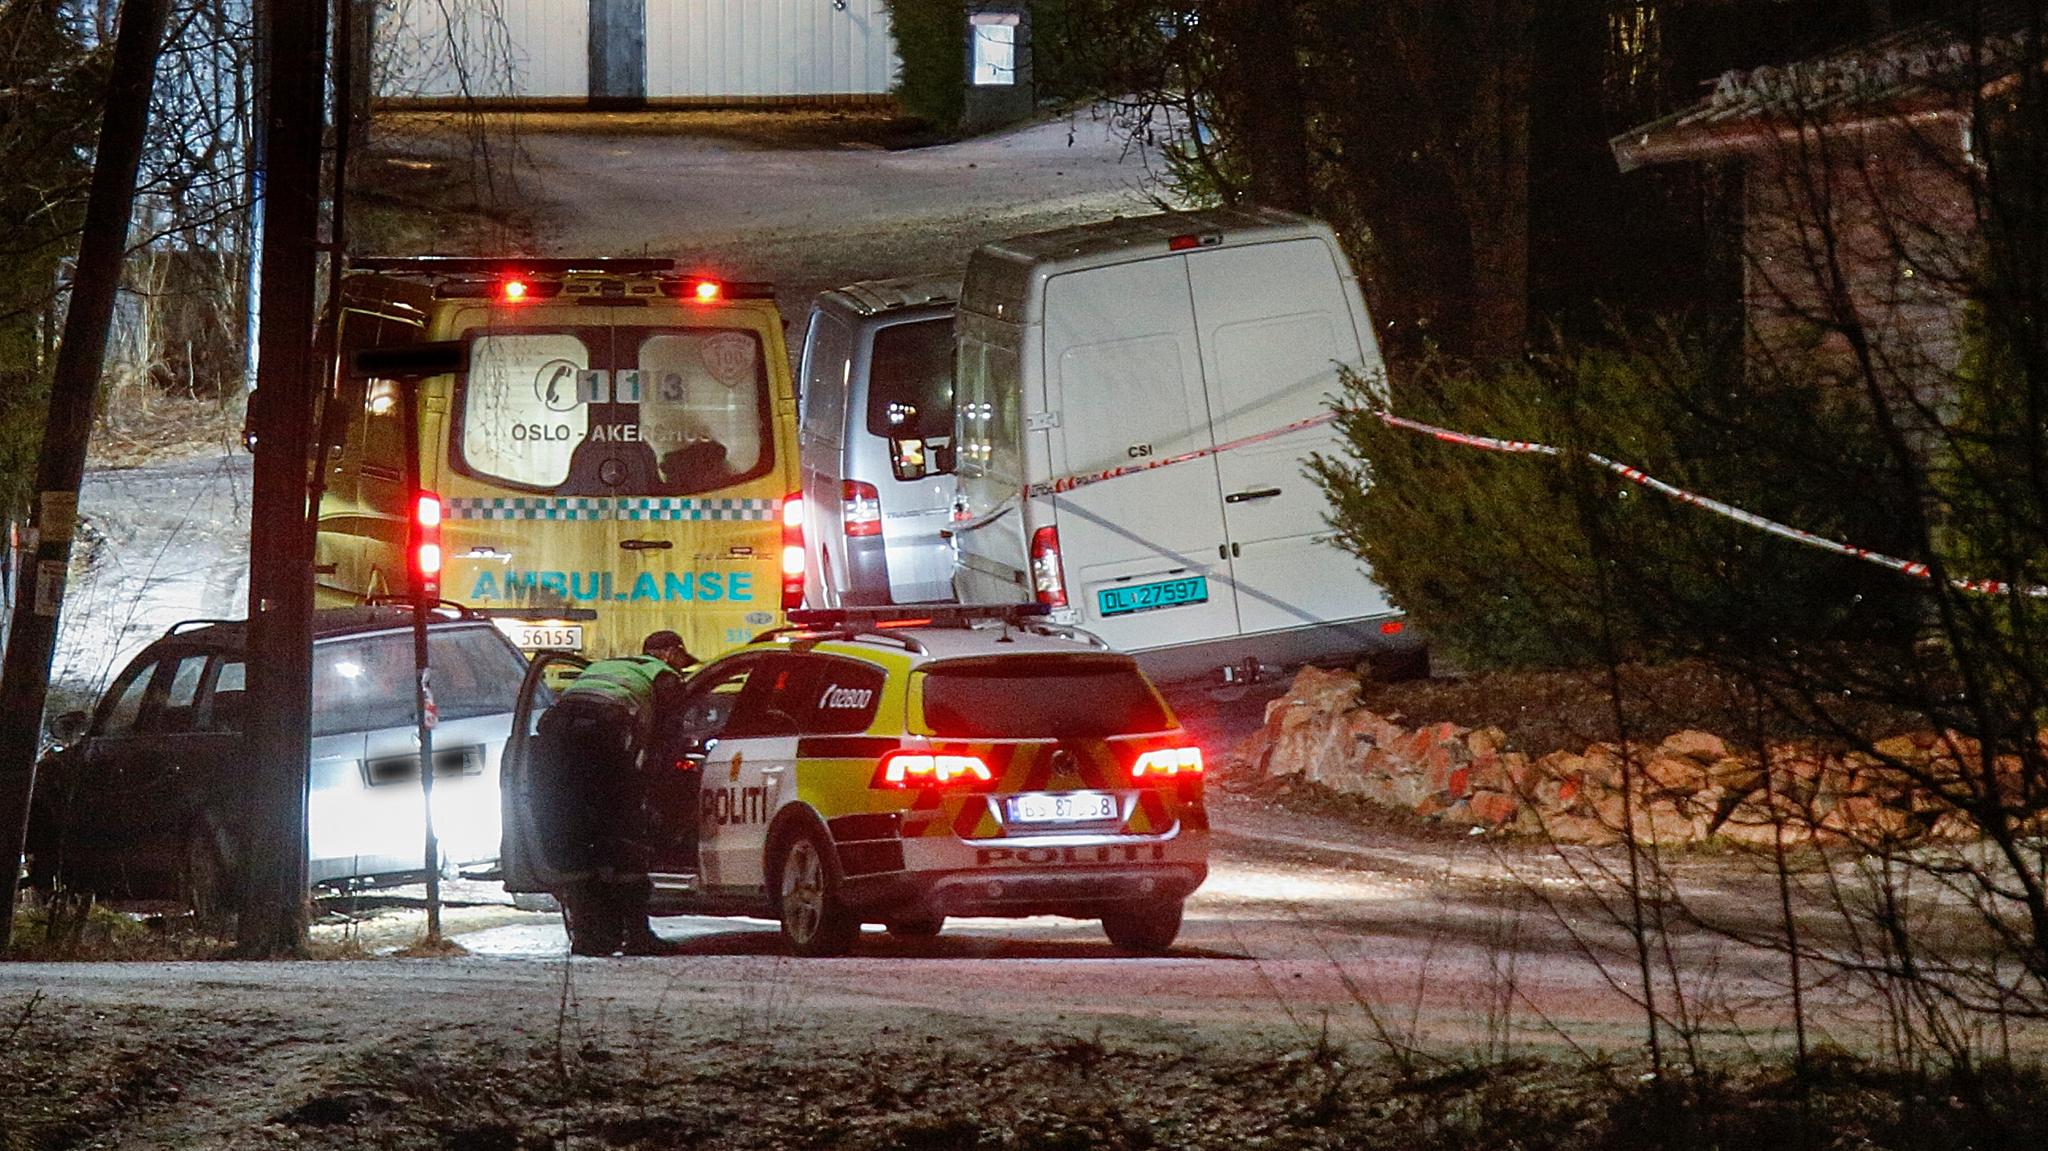  Norskiraneren (31) ble drept i en sokkelleilighet han leide i Asker. 